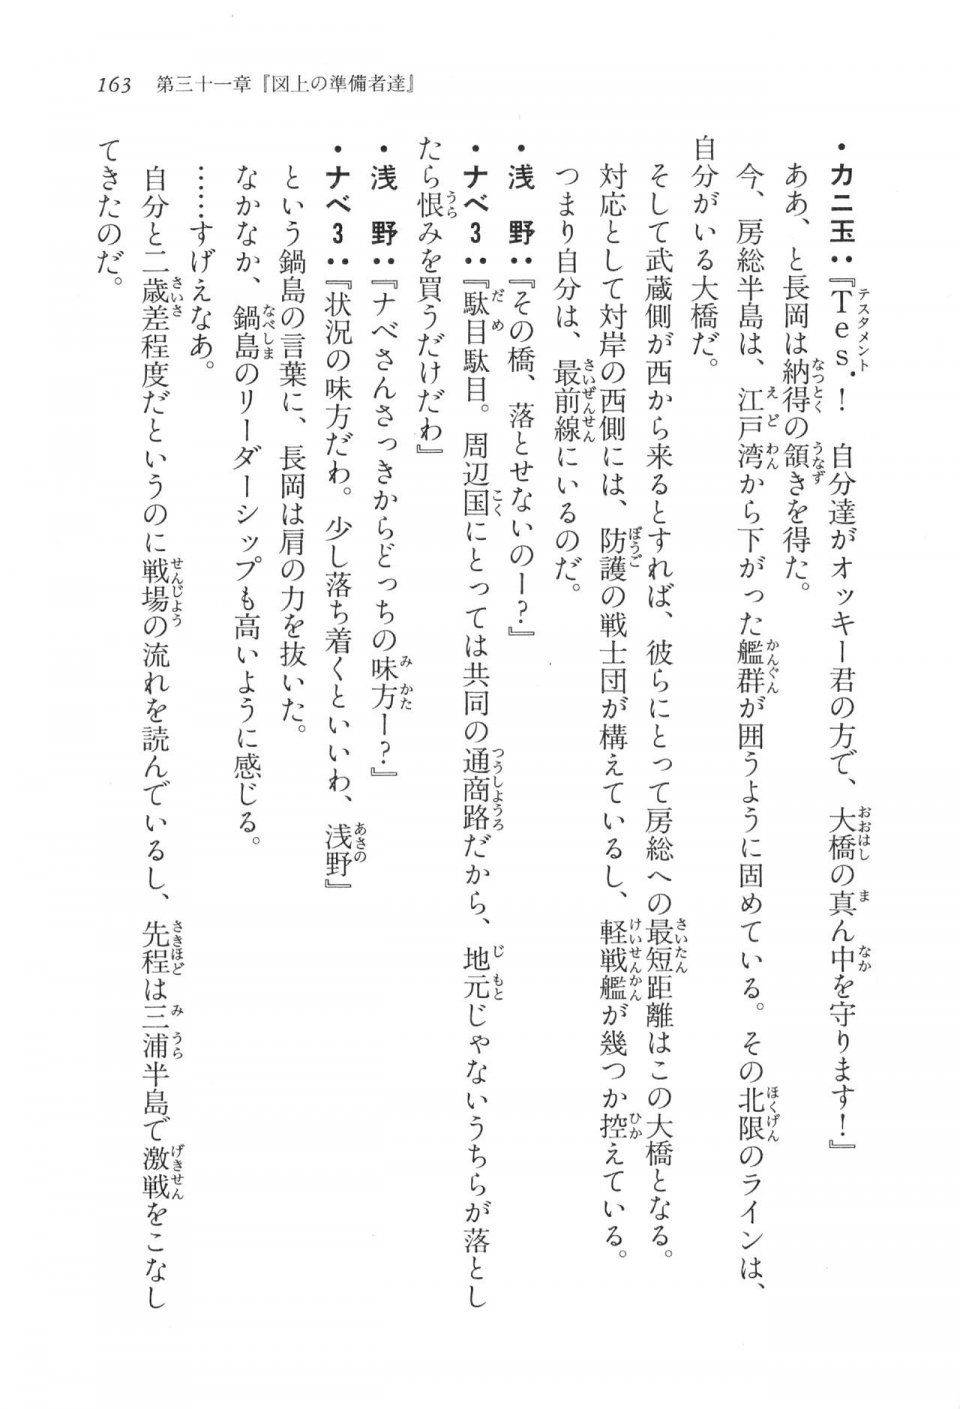 Kyoukai Senjou no Horizon LN Vol 17(7B) - Photo #163